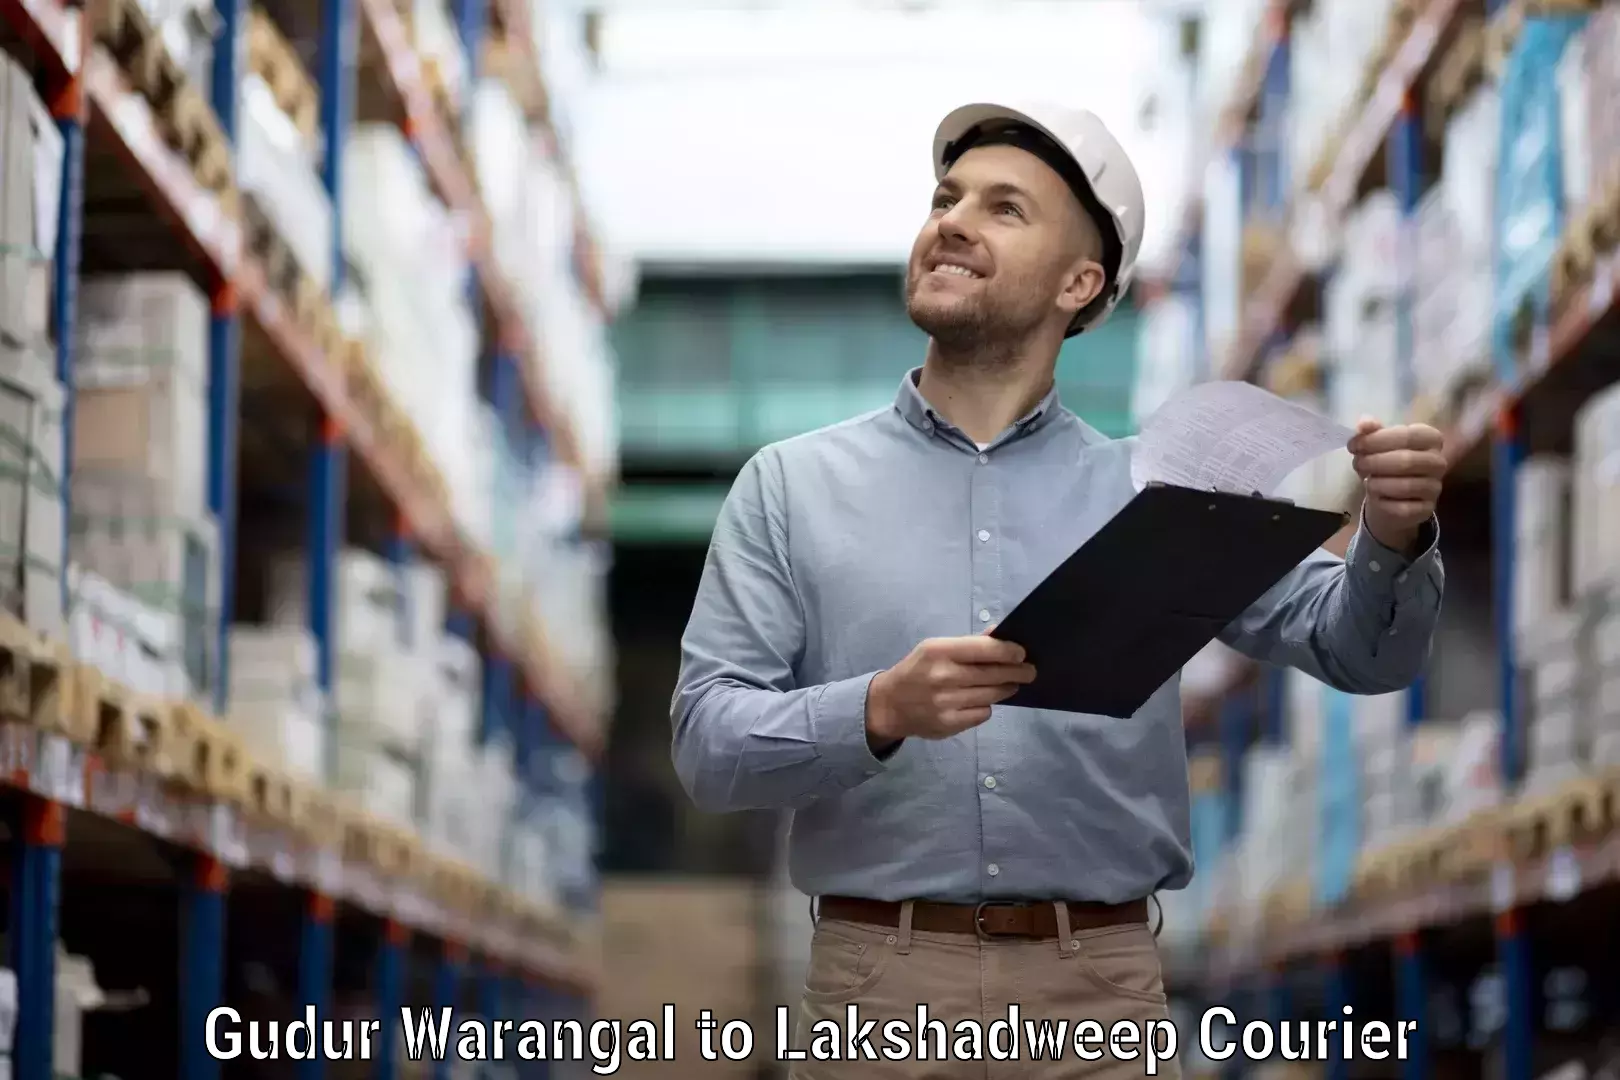 Seamless shipping service Gudur Warangal to Lakshadweep